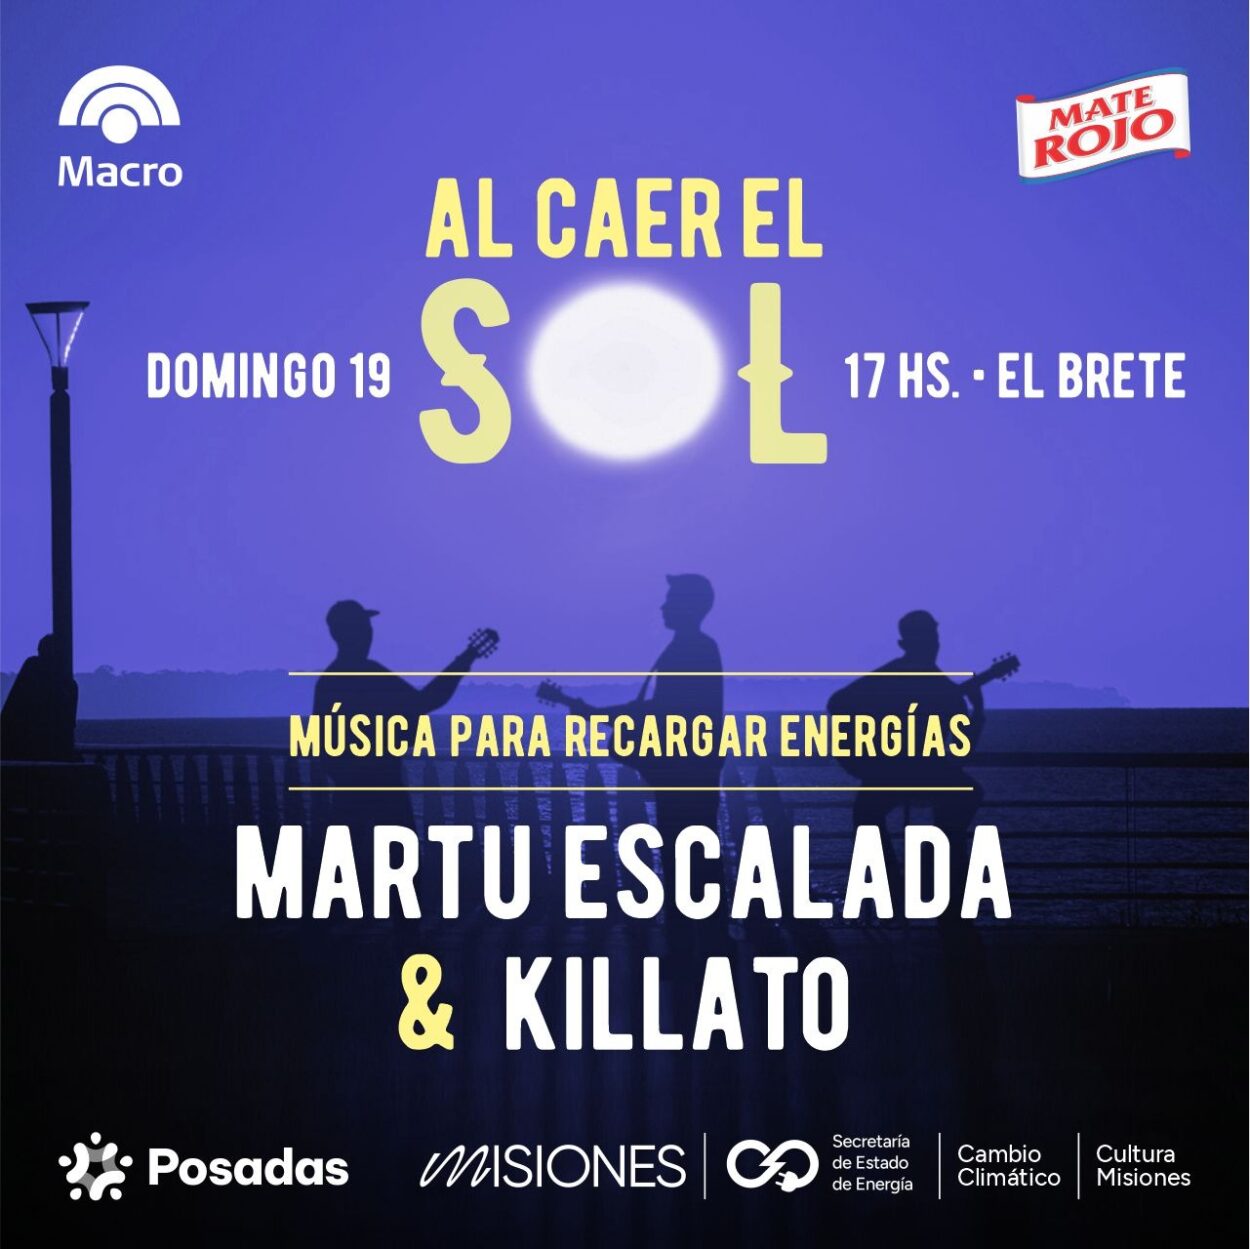 Martu Escalada y Killato: rock y música urbana este domingo “Al caer el sol en El Brete” imagen-13